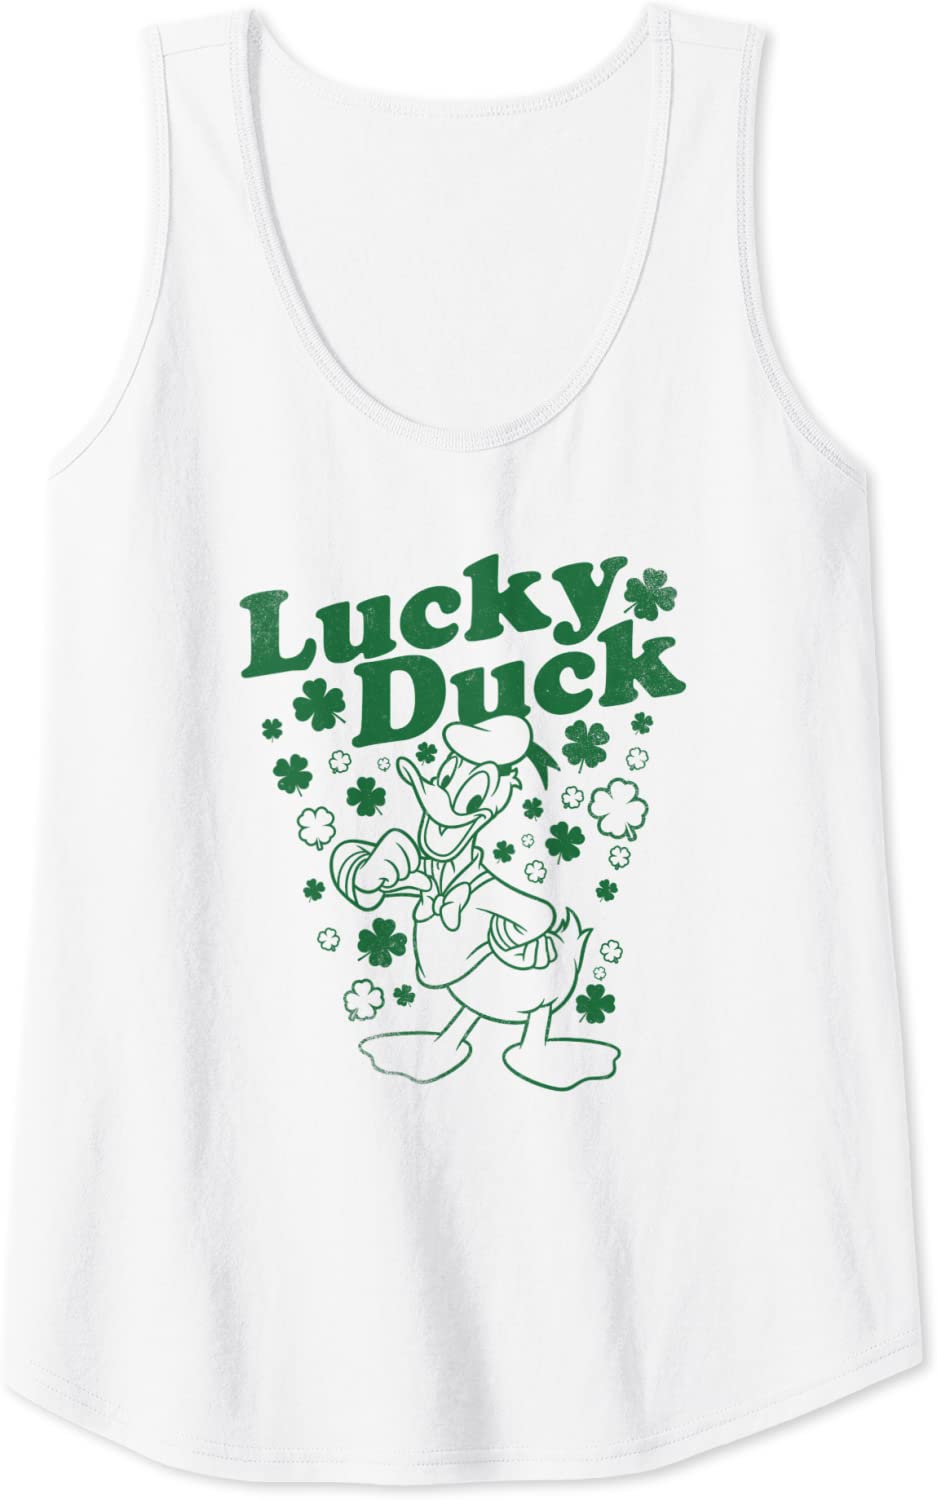 Lucky Duck tank